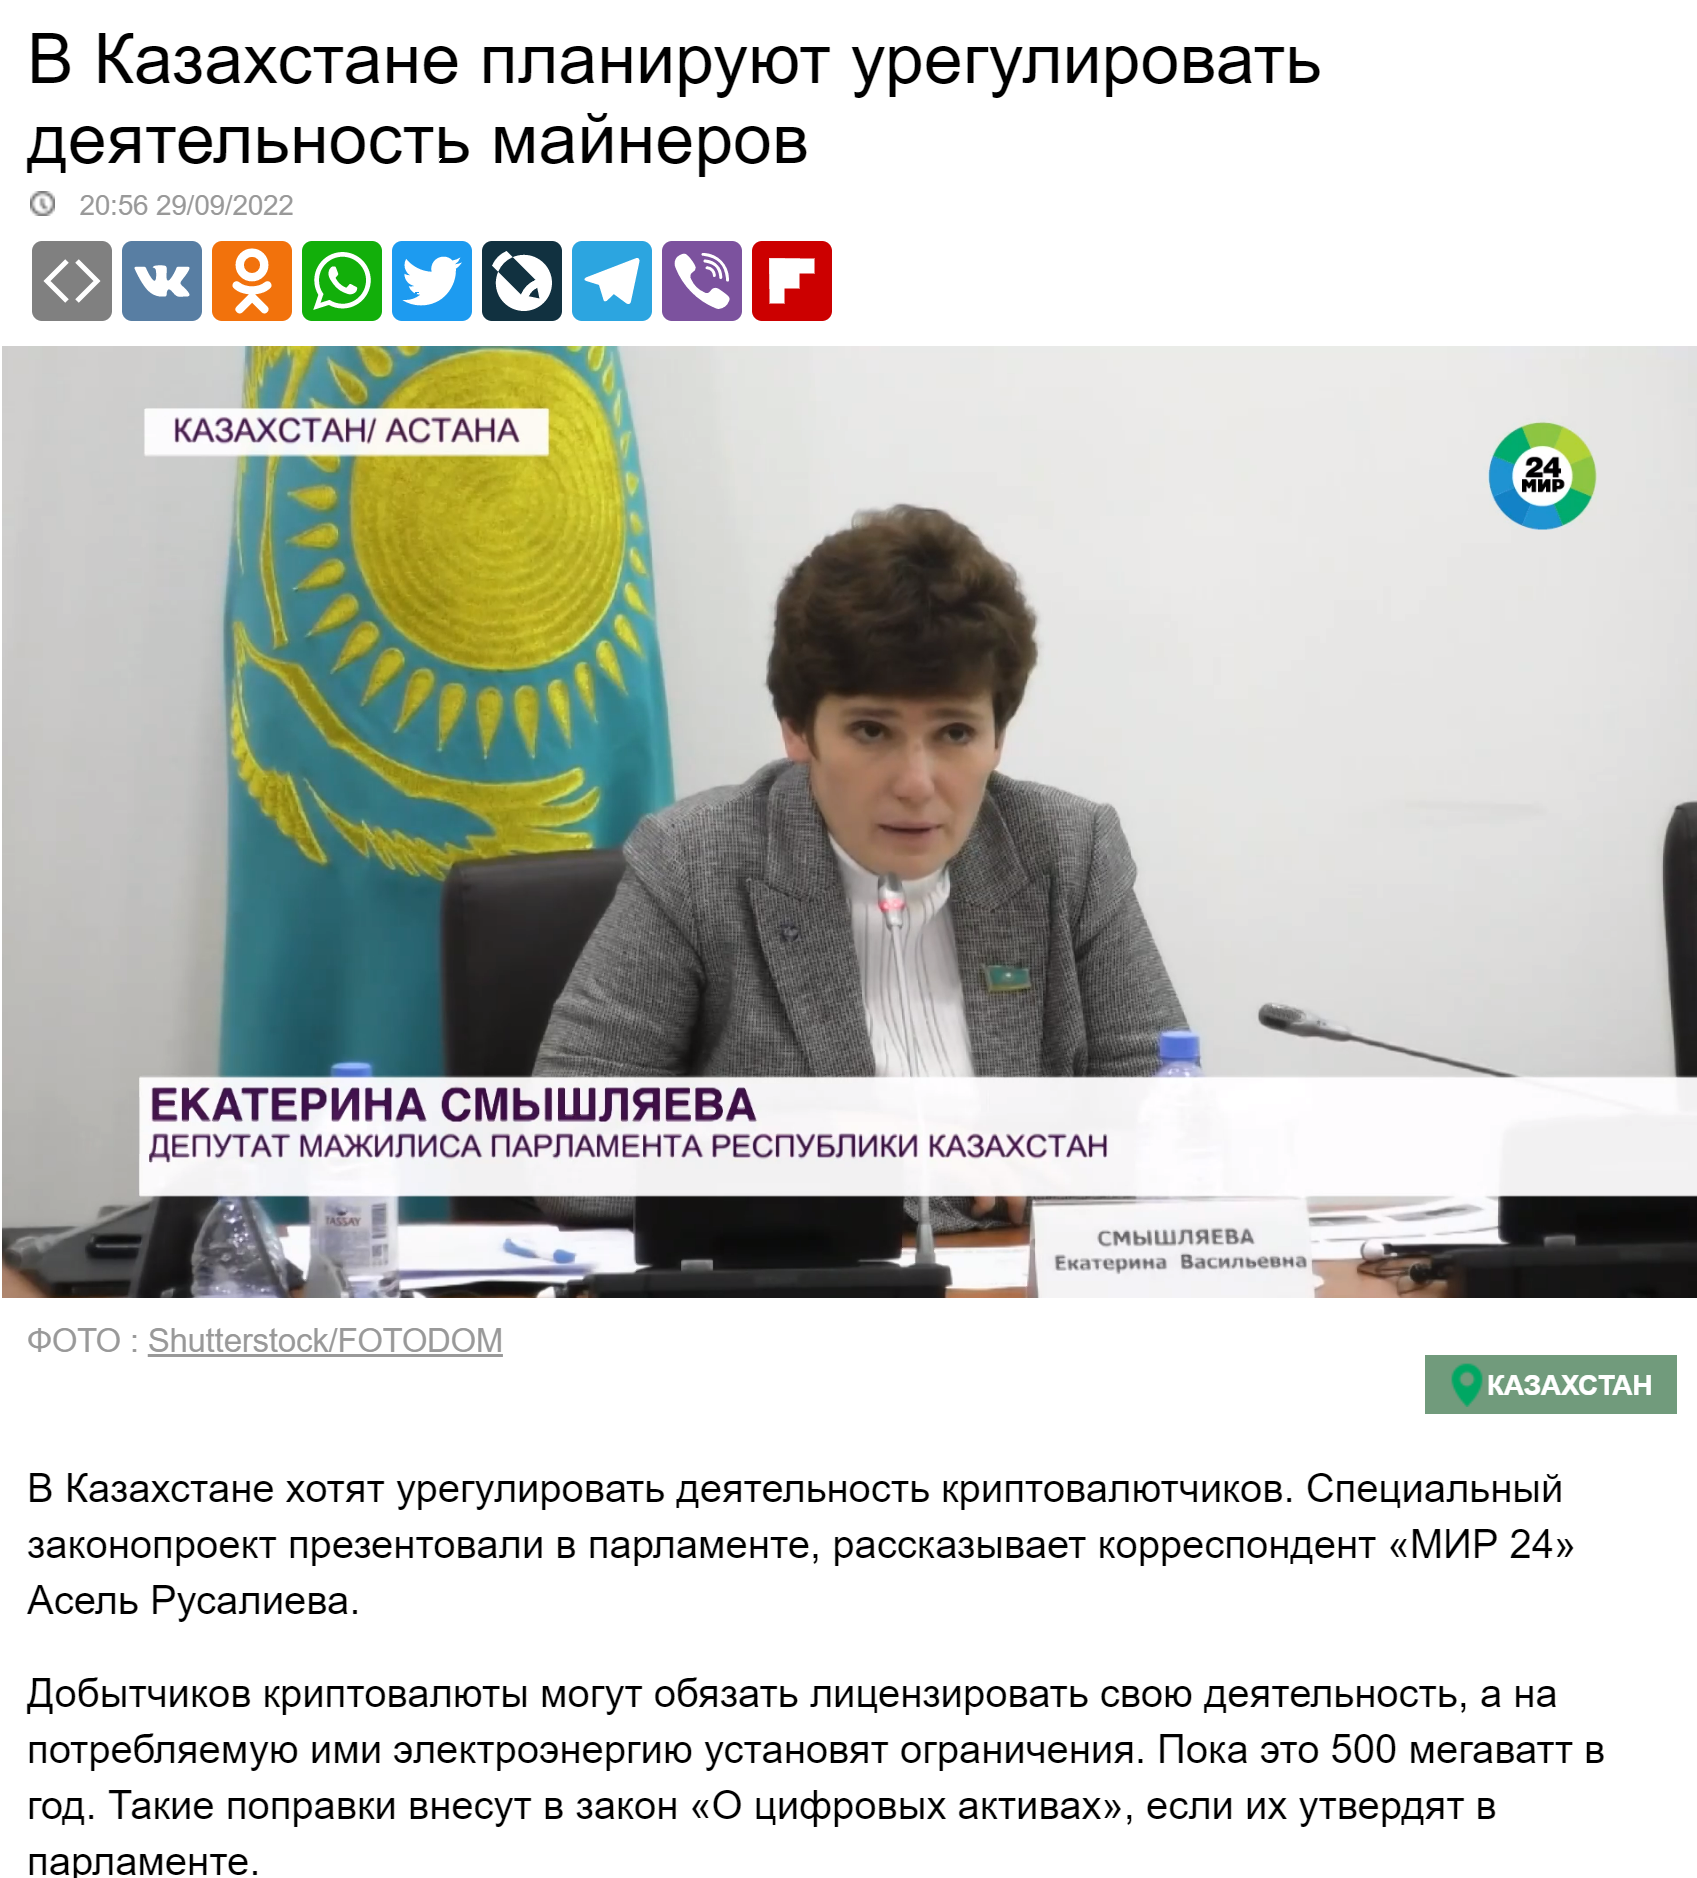 В Казахстане планируют урегулировать деятельность майнеров